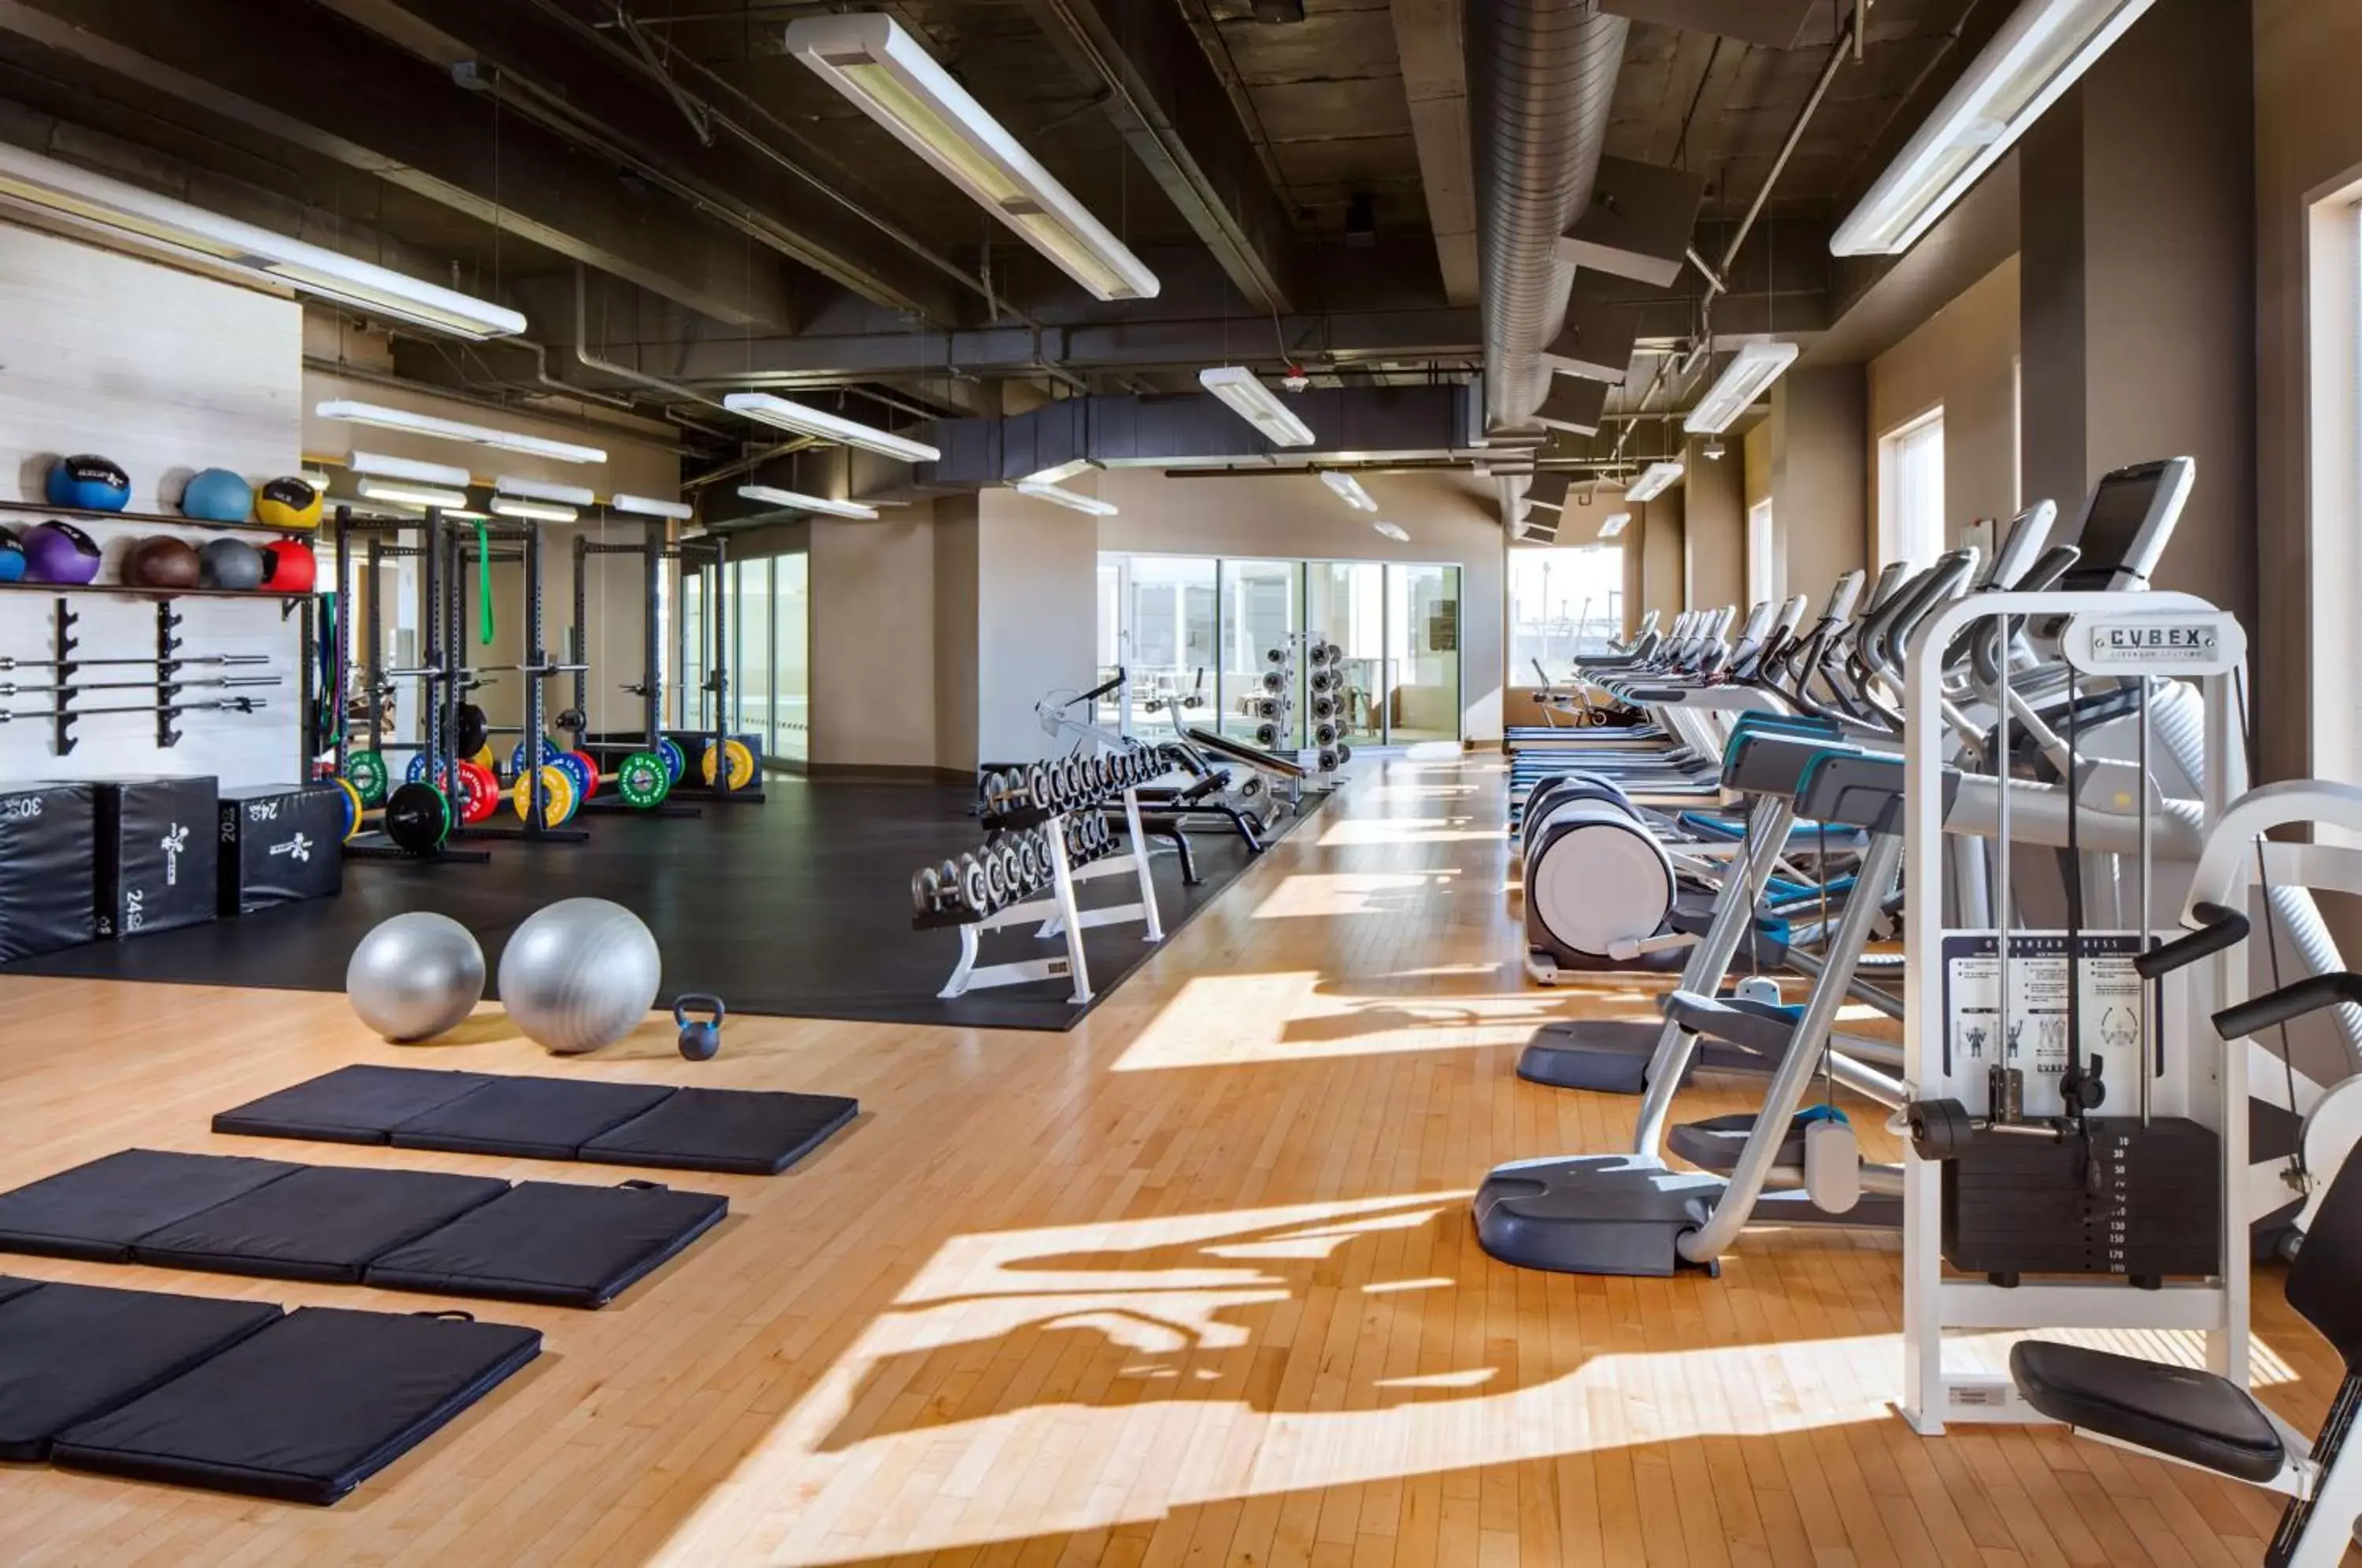 Fitness centre/facilities, Fitness Center/Facilities in Hyatt Regency Bellevue